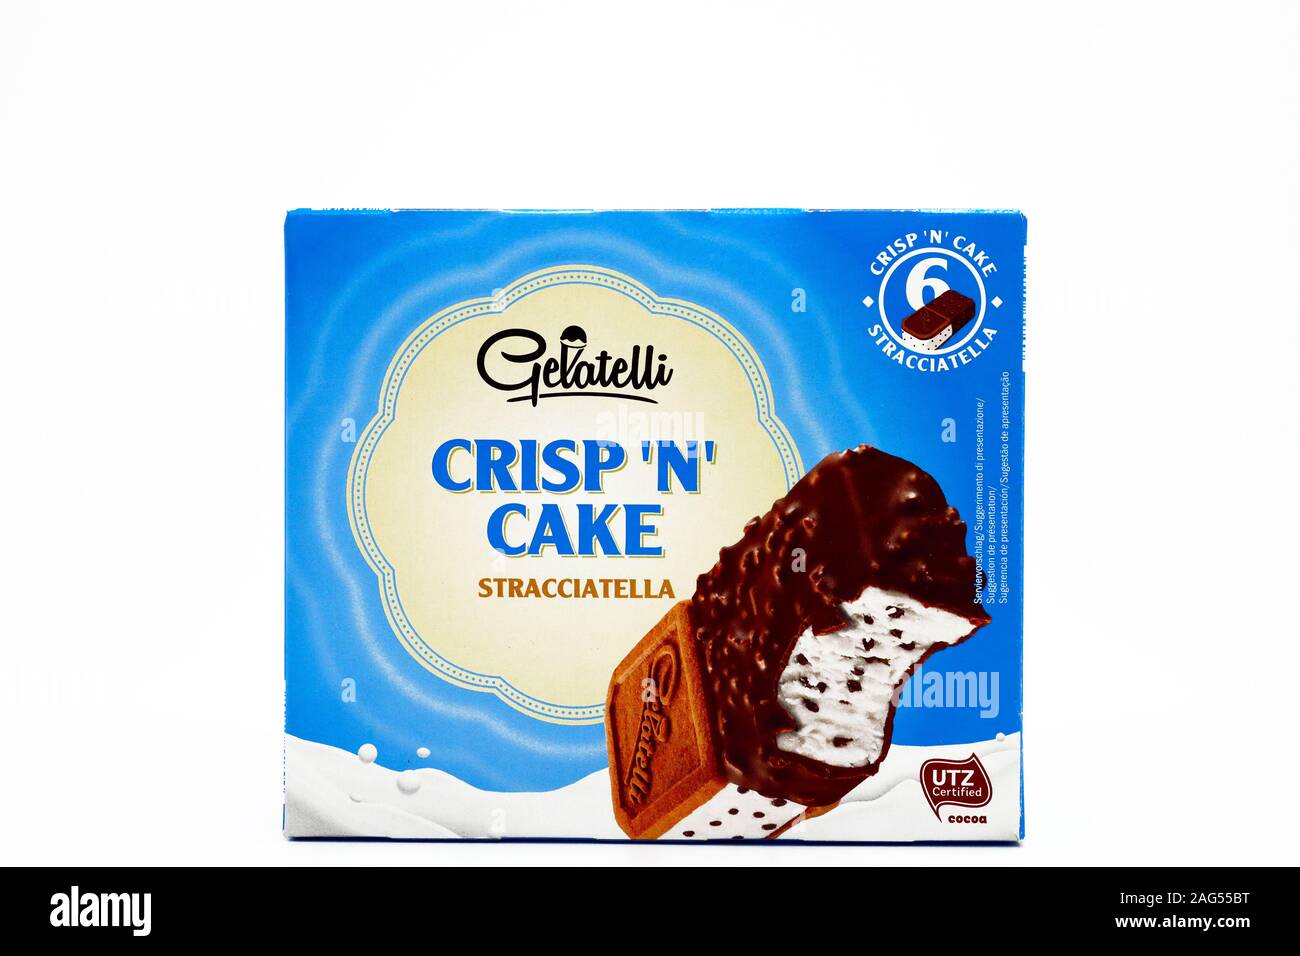 Gelatelli Crisp N Kuchen Eis Gelatelli Ist Eine Marke Der Lidl Stiftung Co Kg Supermarktkette Stockfotografie Alamy